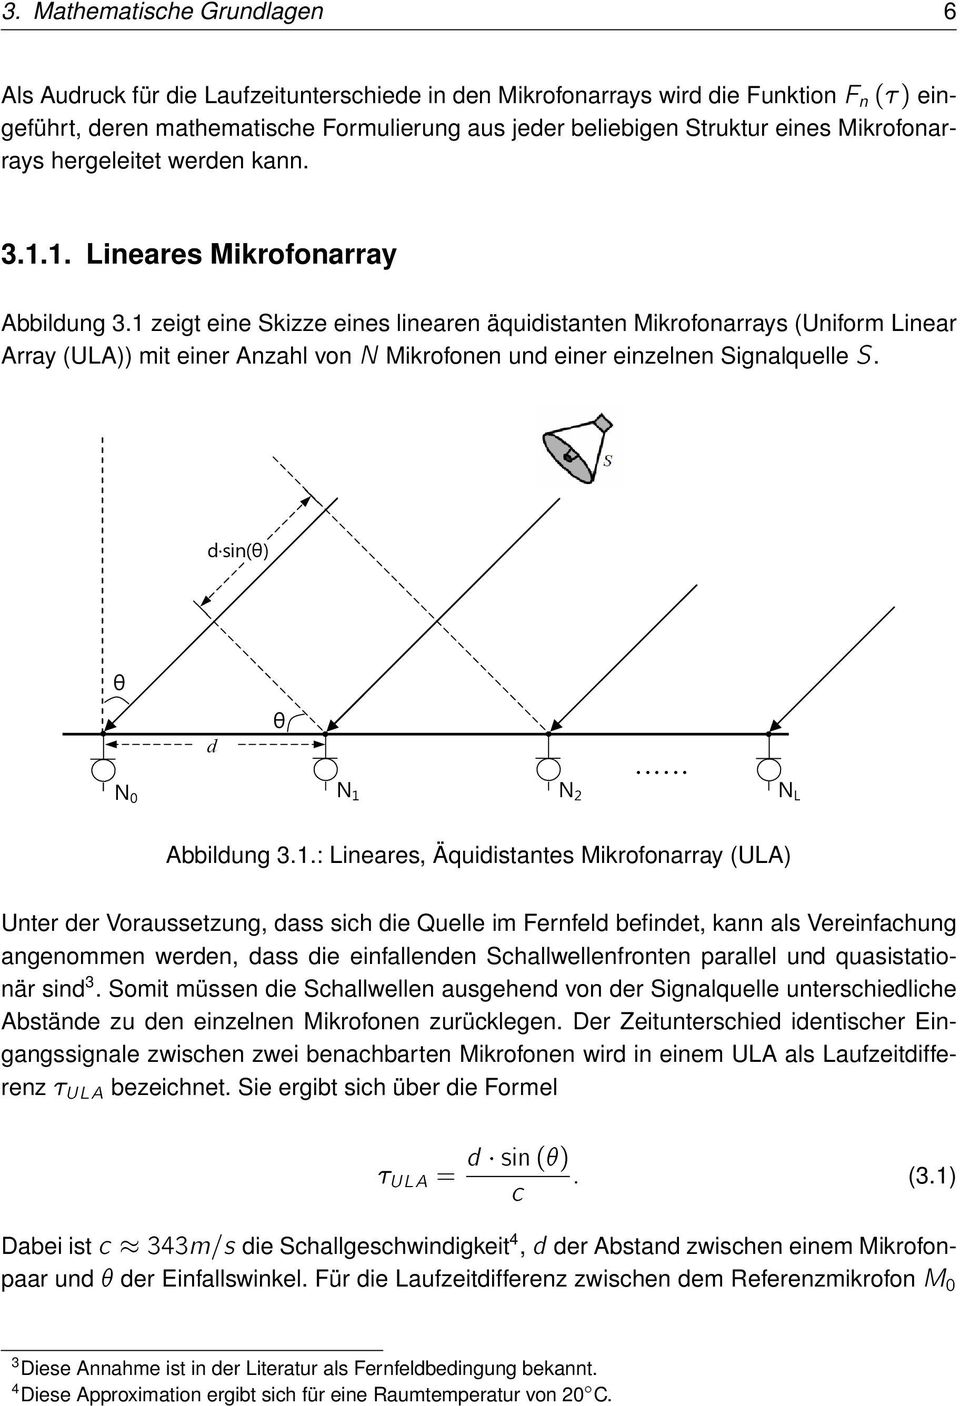 1 zeigt eine Skizze eines linearen äquidistanten Mikrofonarrays (Uniform Linear Array (ULA)) mit einer Anzahl von N Mikrofonen und einer einzelnen Signalquelle S.